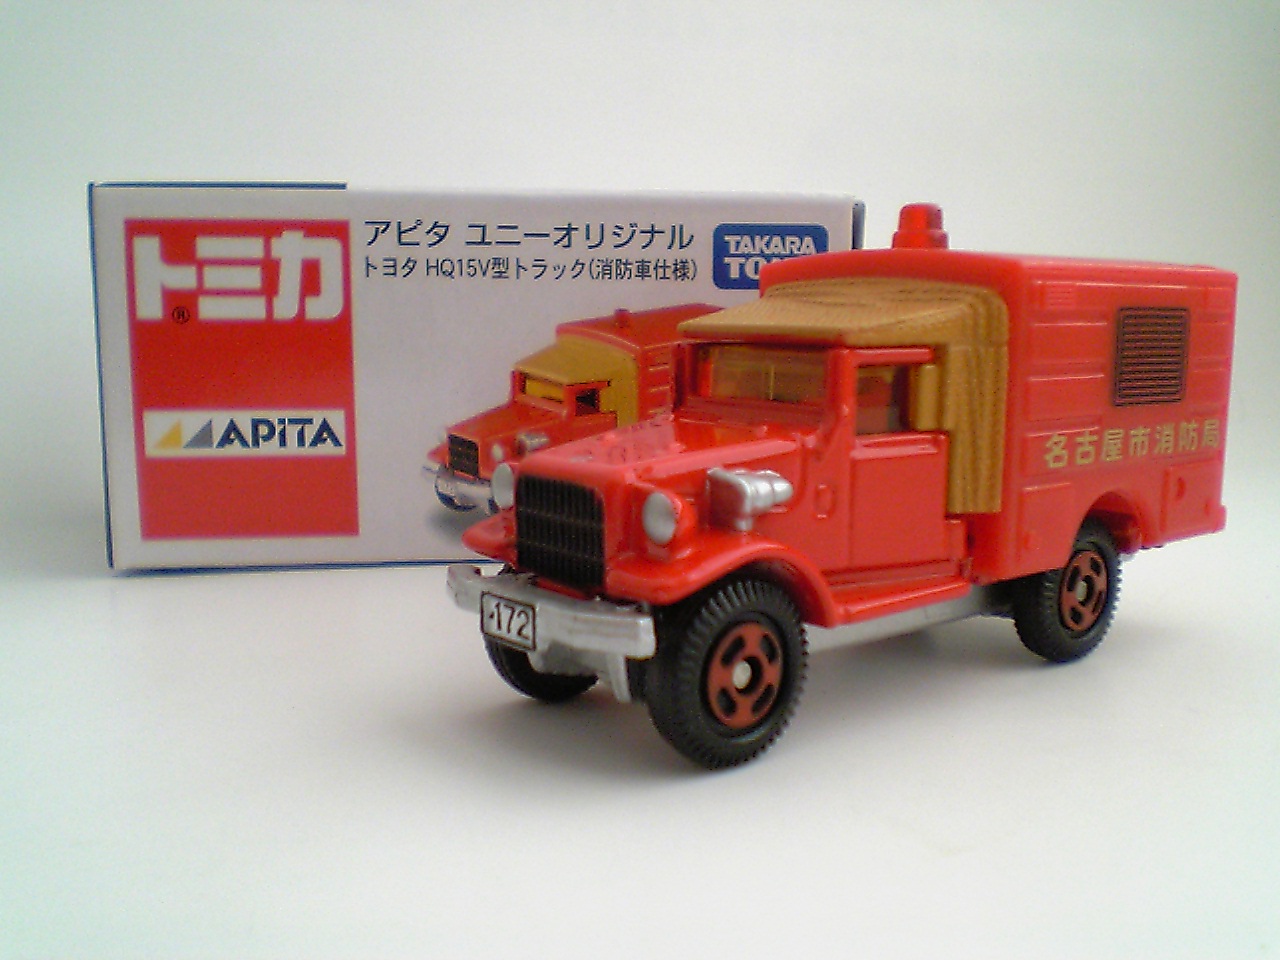 アピタ特注 トヨタhq15v型トラック消防車 おもちゃ雑記帖 静岡版